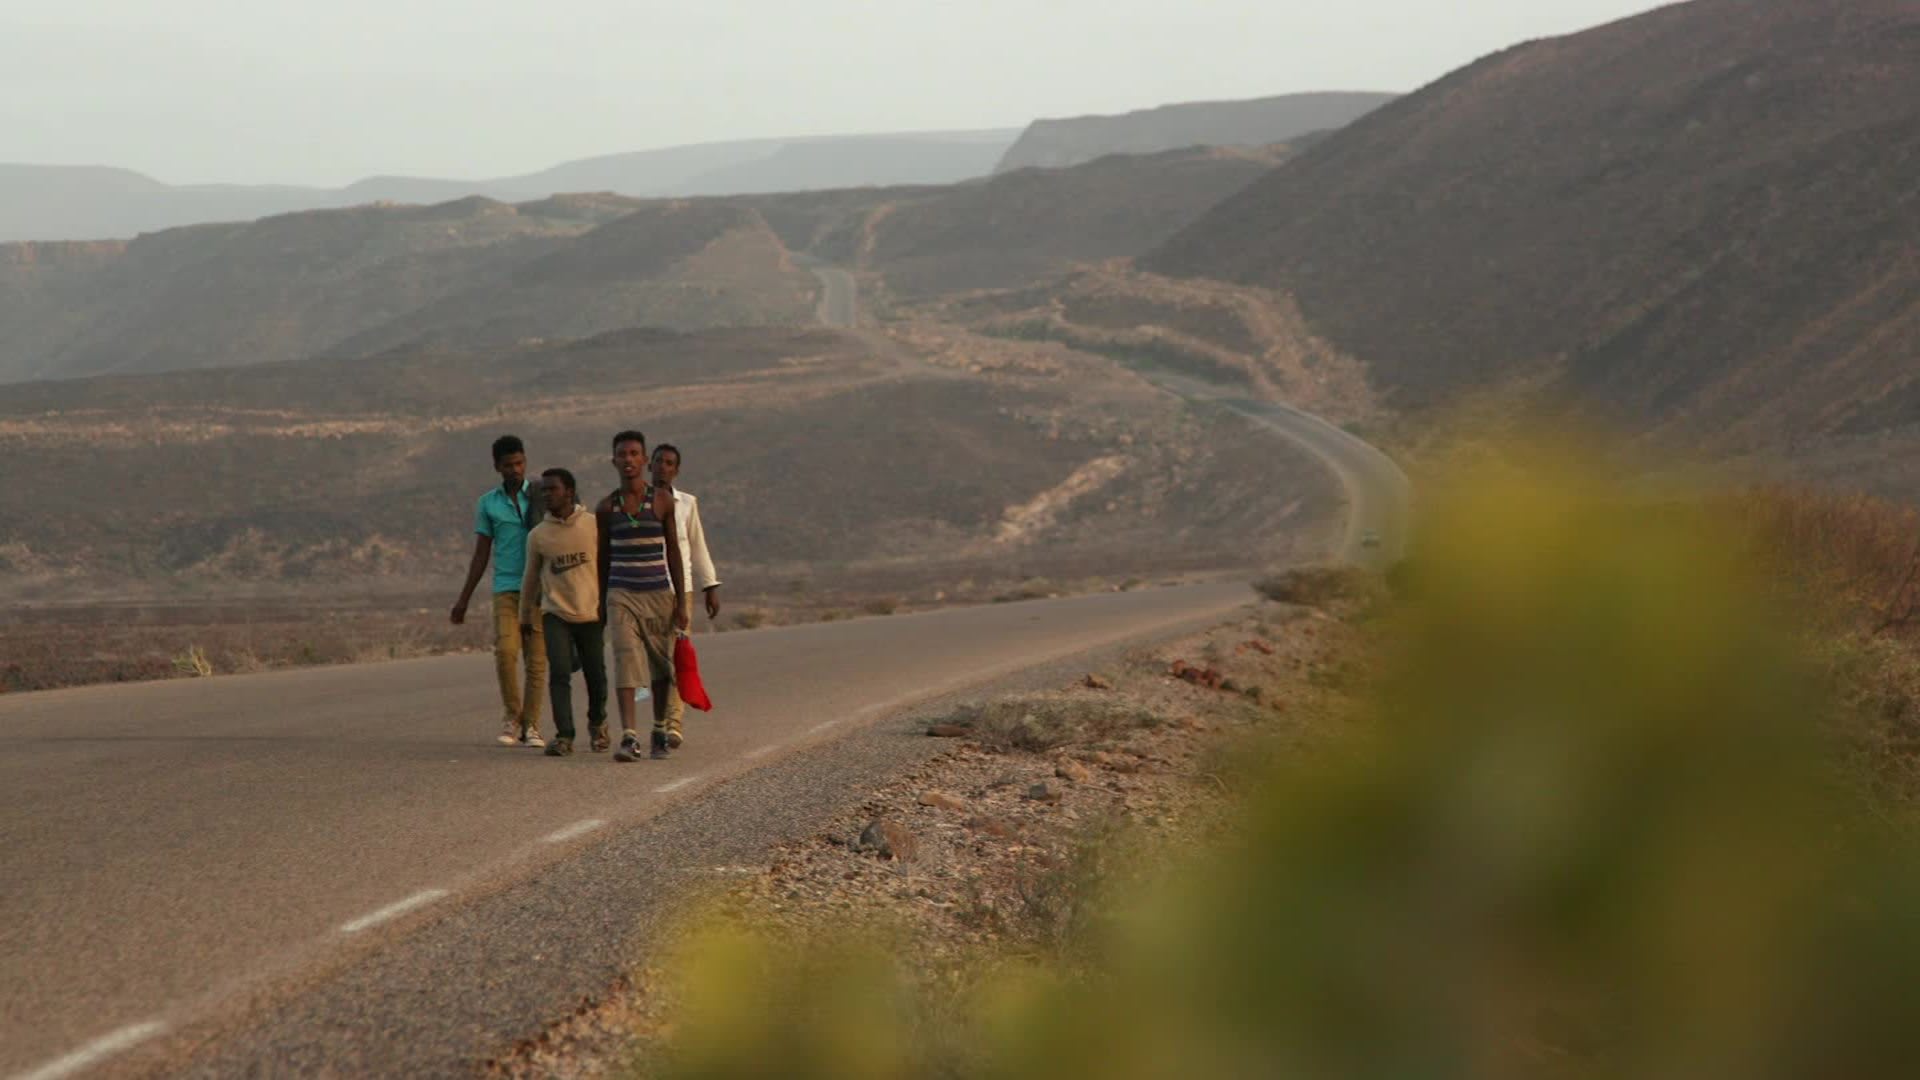 كيف يخاطر مهاجرون إثيوبيون بالعبور عبر حرب اليمن للوصول إلى السعودية؟